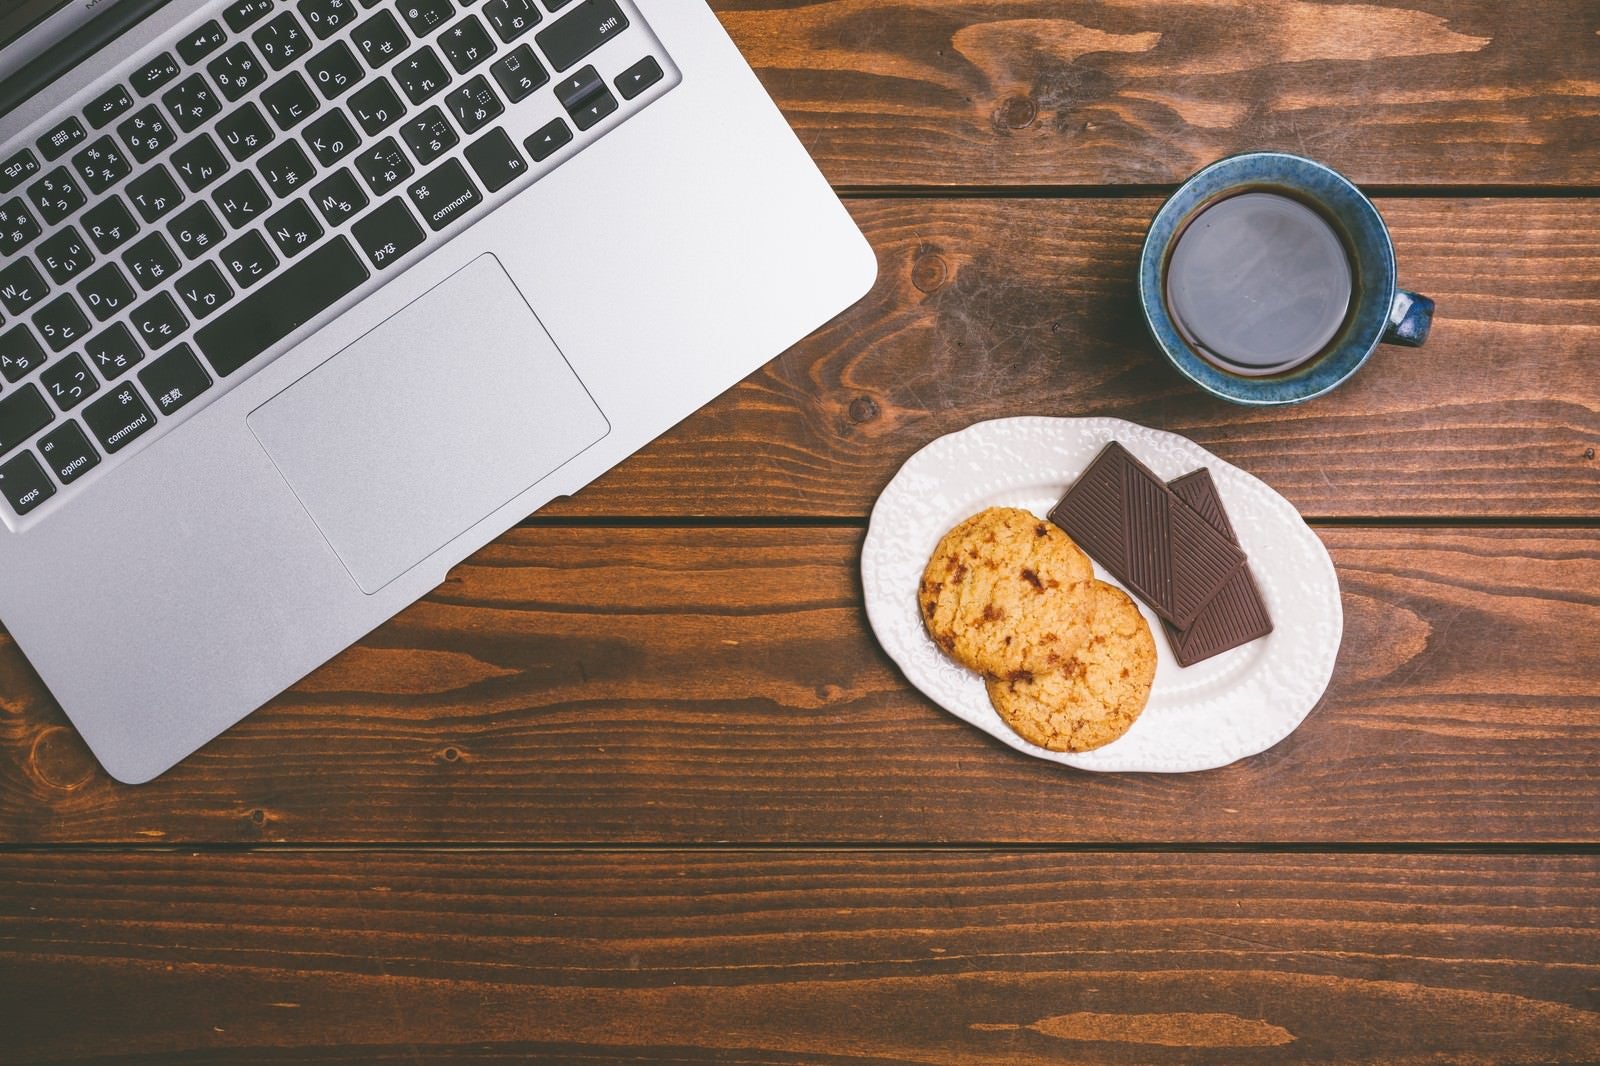 「ノートパソコンで仕事したらコーヒーとお菓子でブレイクタイム」の写真